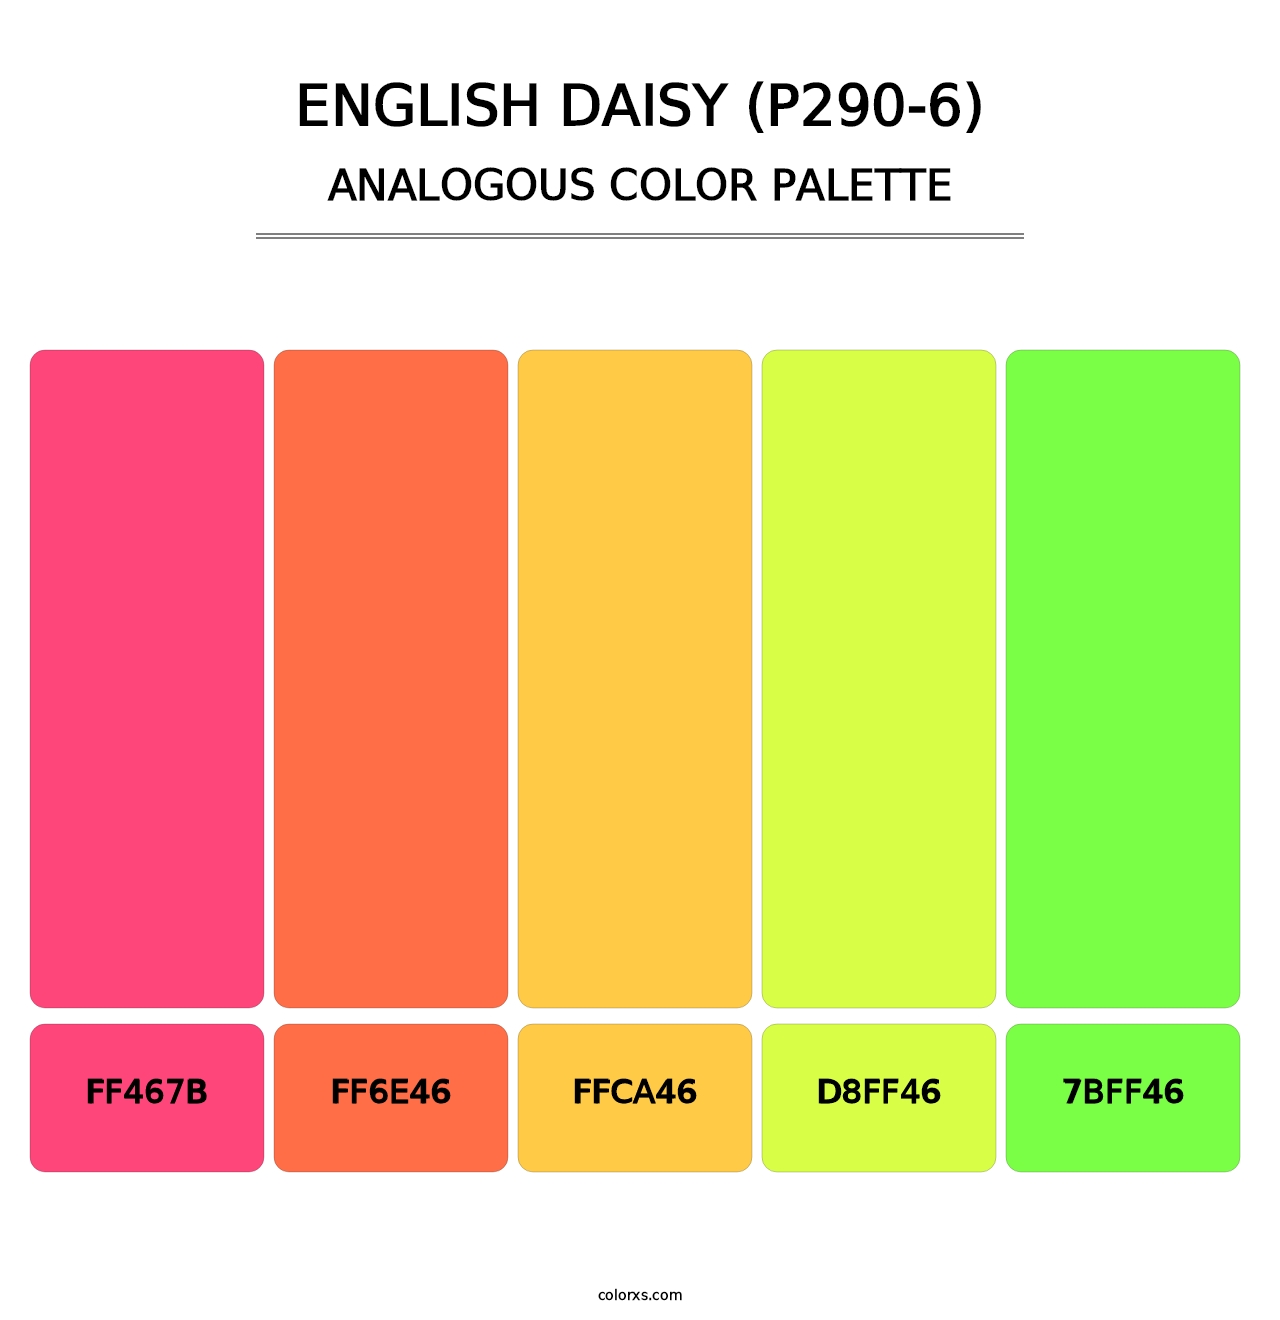 English Daisy (P290-6) - Analogous Color Palette